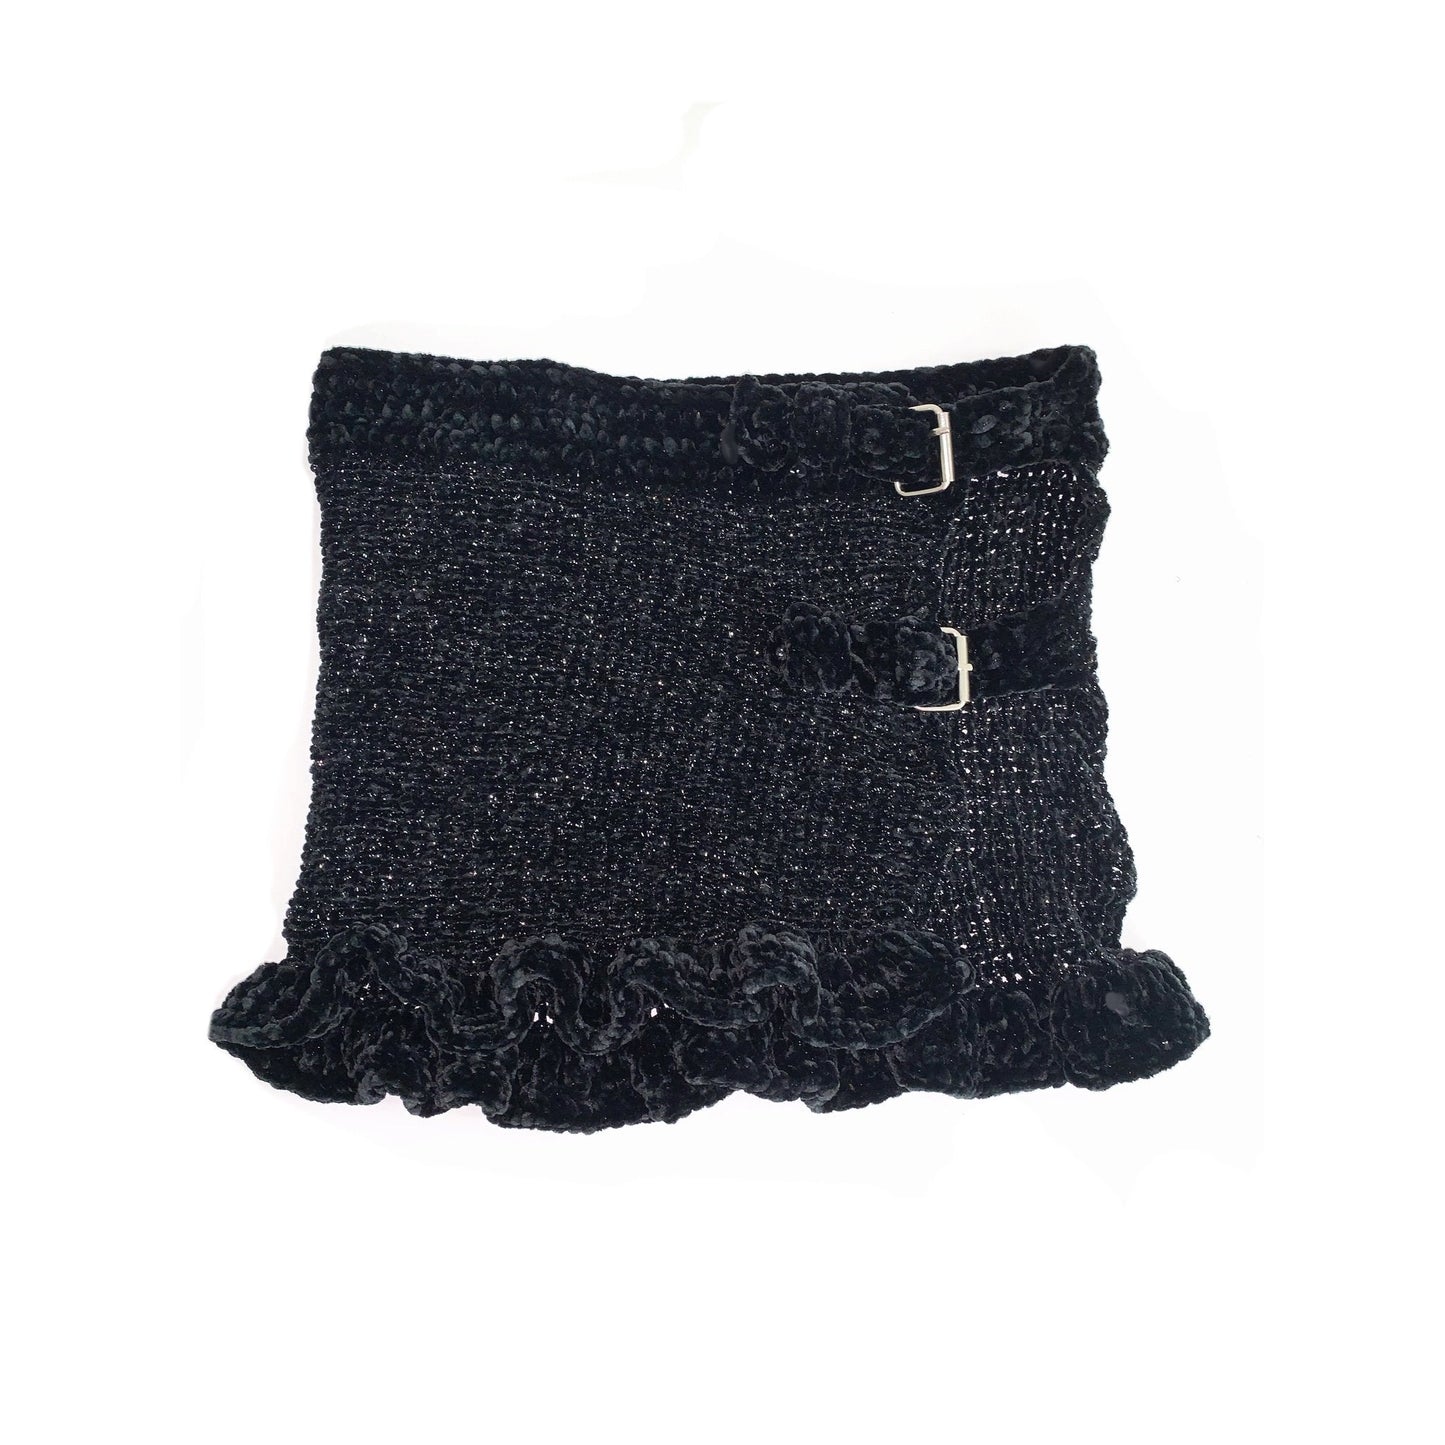 black velvet and knit buckle skirt with ruffles